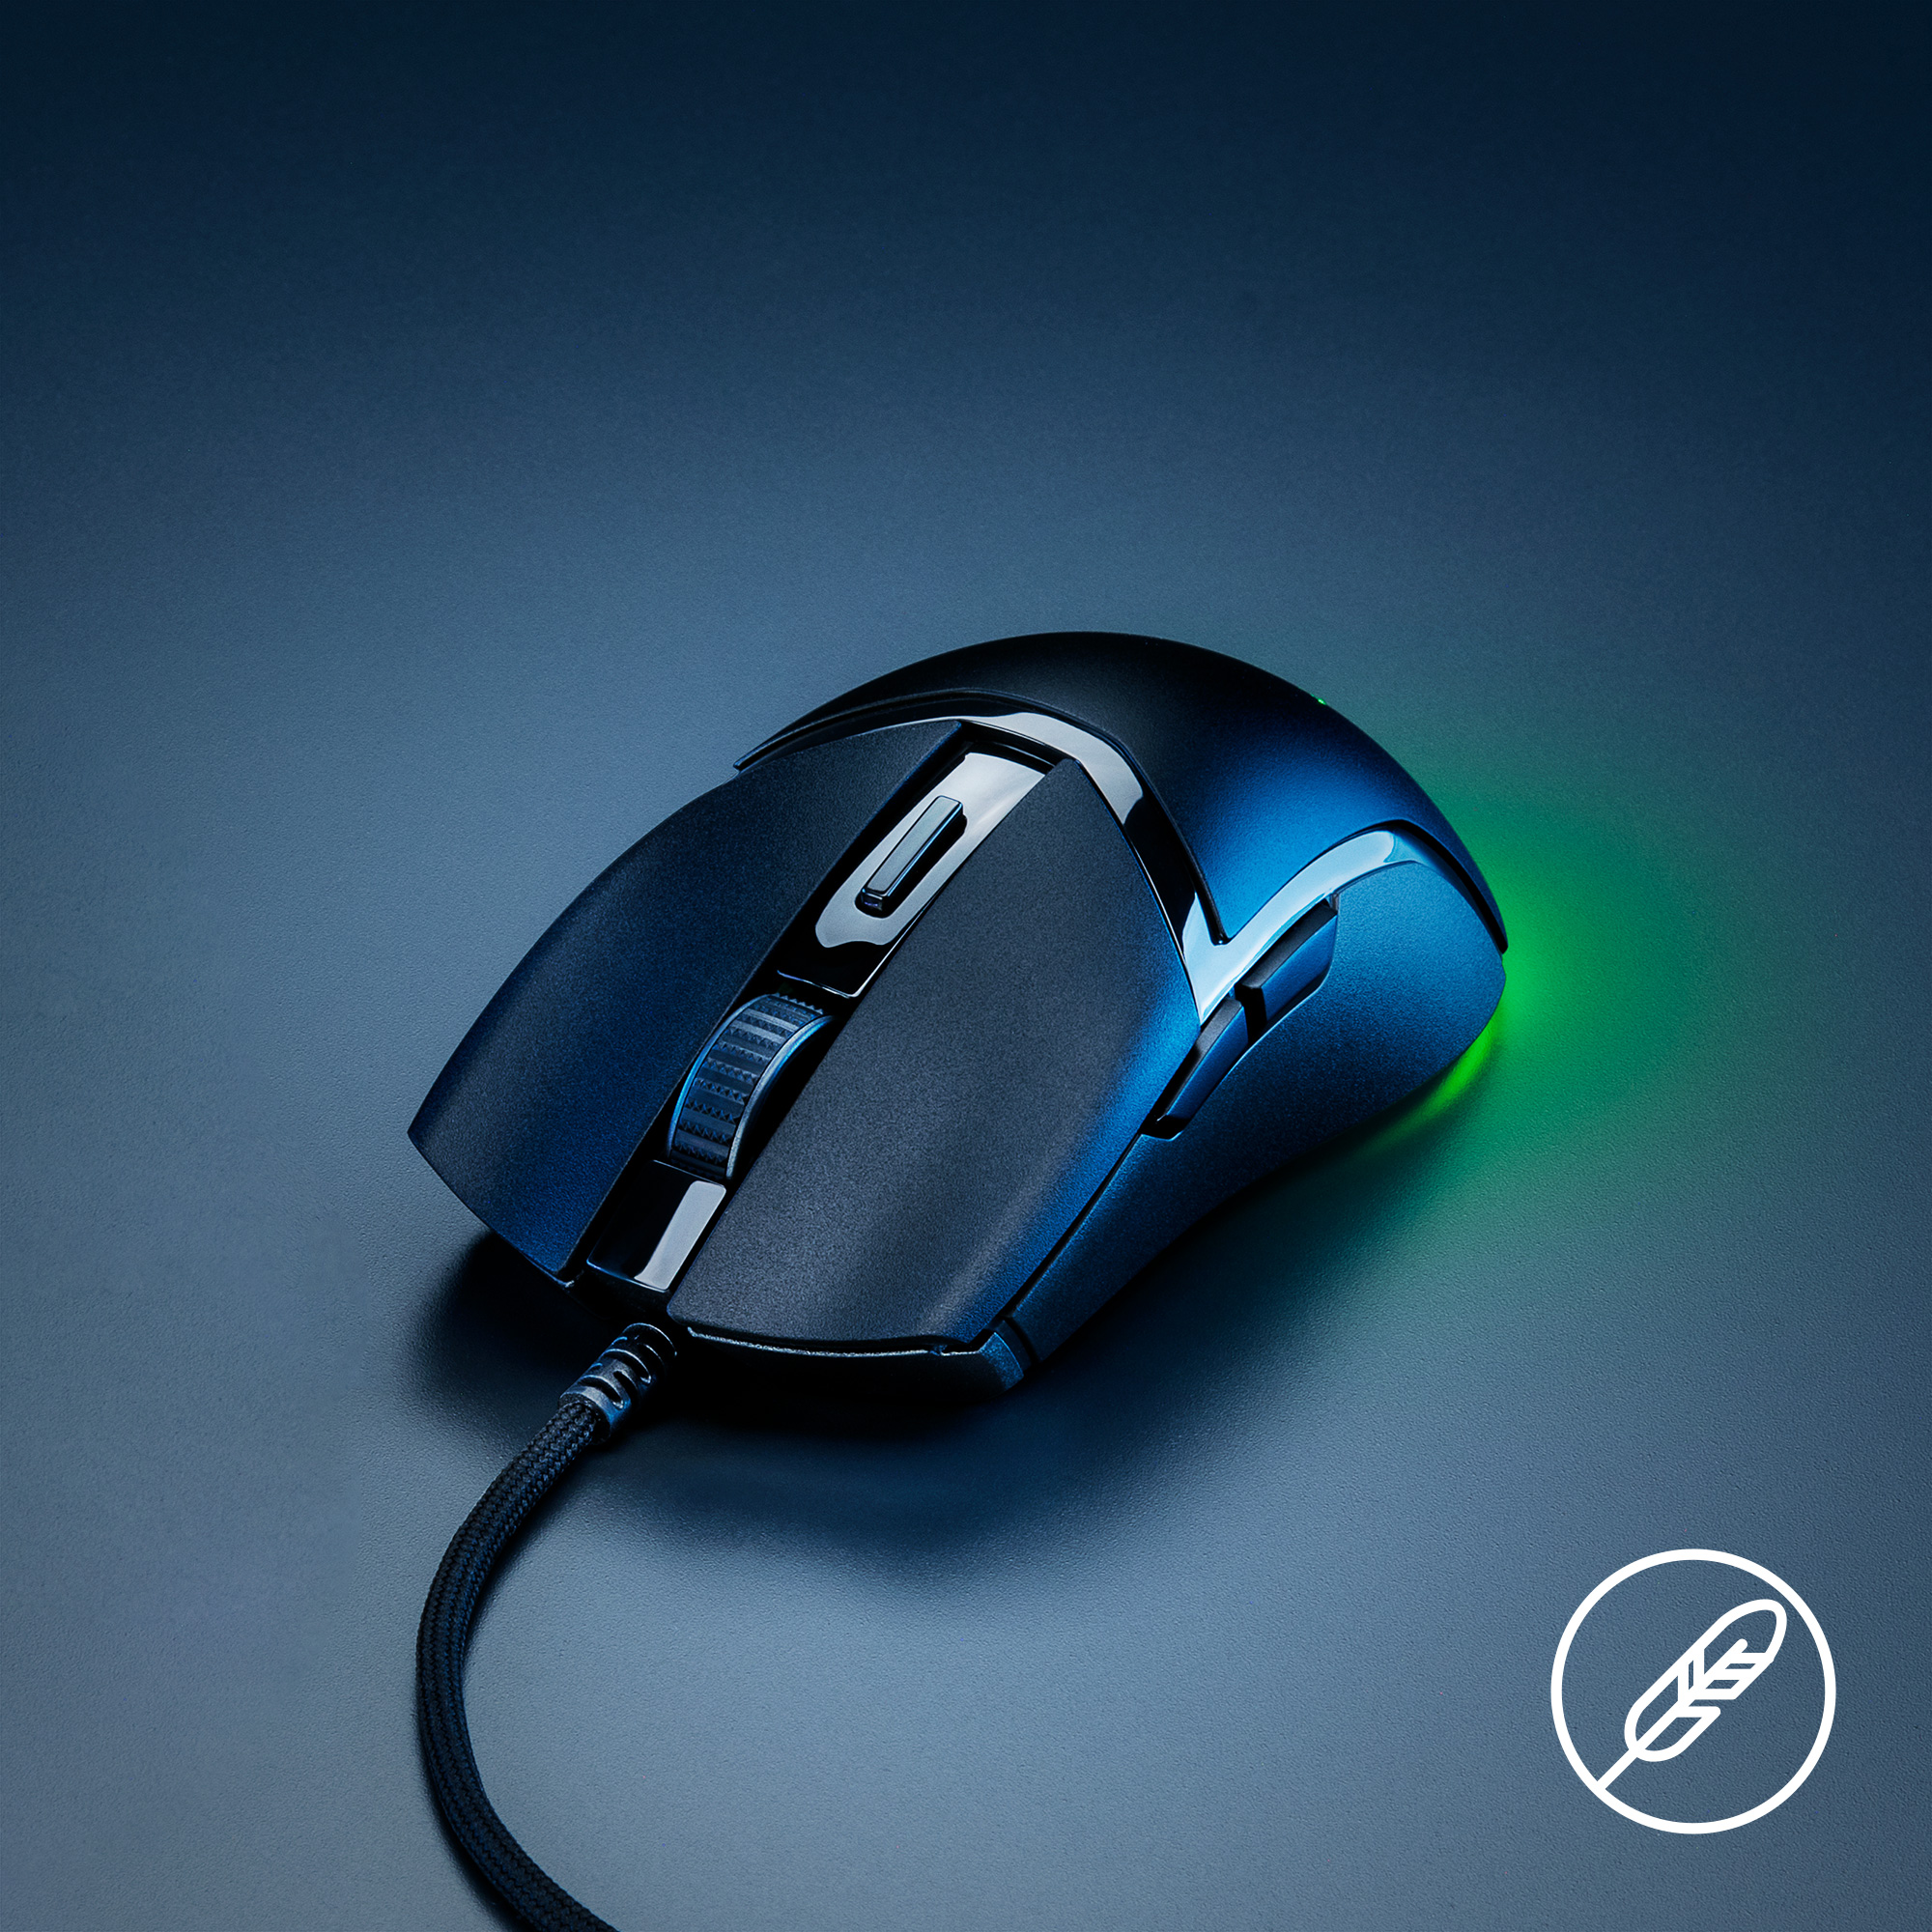 Chuột có dây Razer Cobra-Wired Gaming Mouse (Hàng chính hãng) 